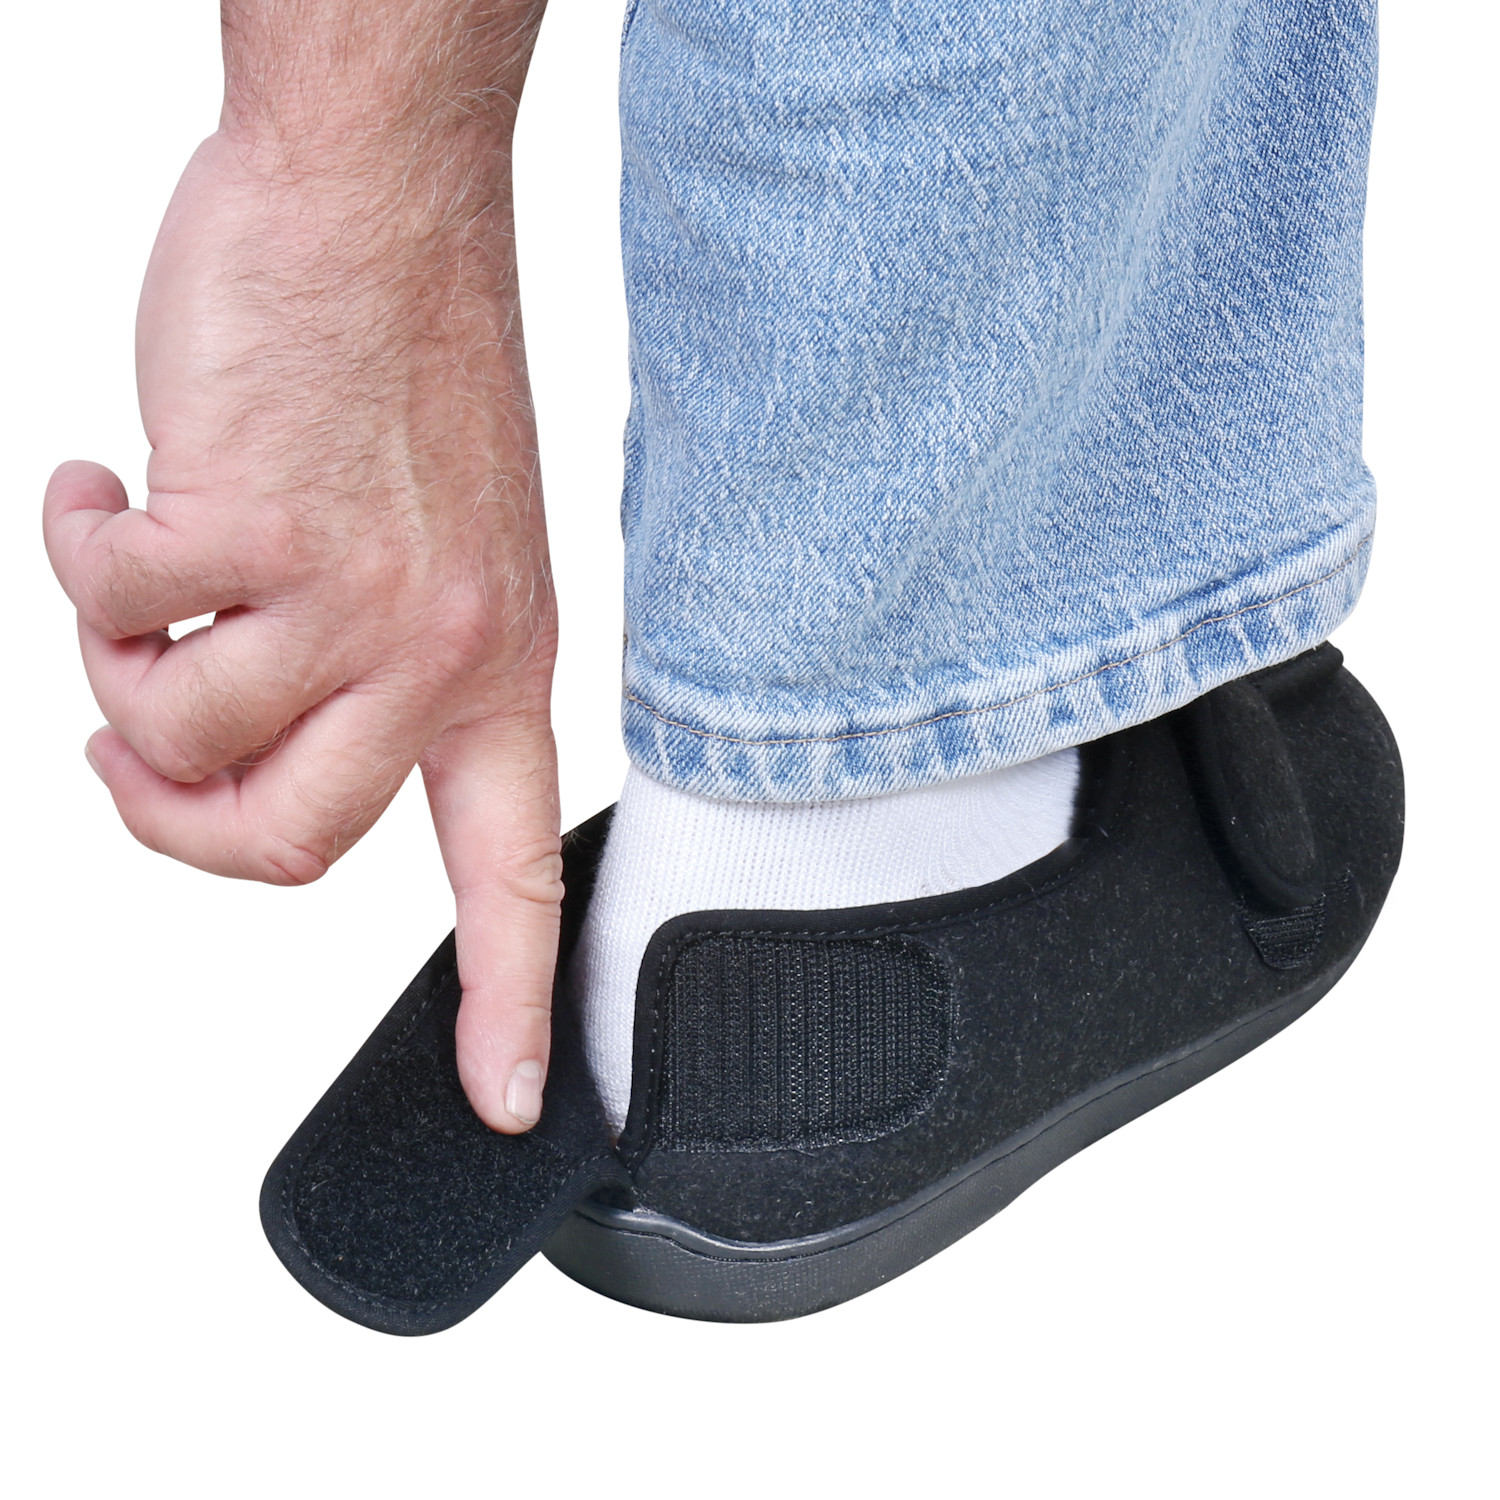 Men's Foamtreads Extra-Depth Wool Slippers - For Sensitive Swollen Feet ...